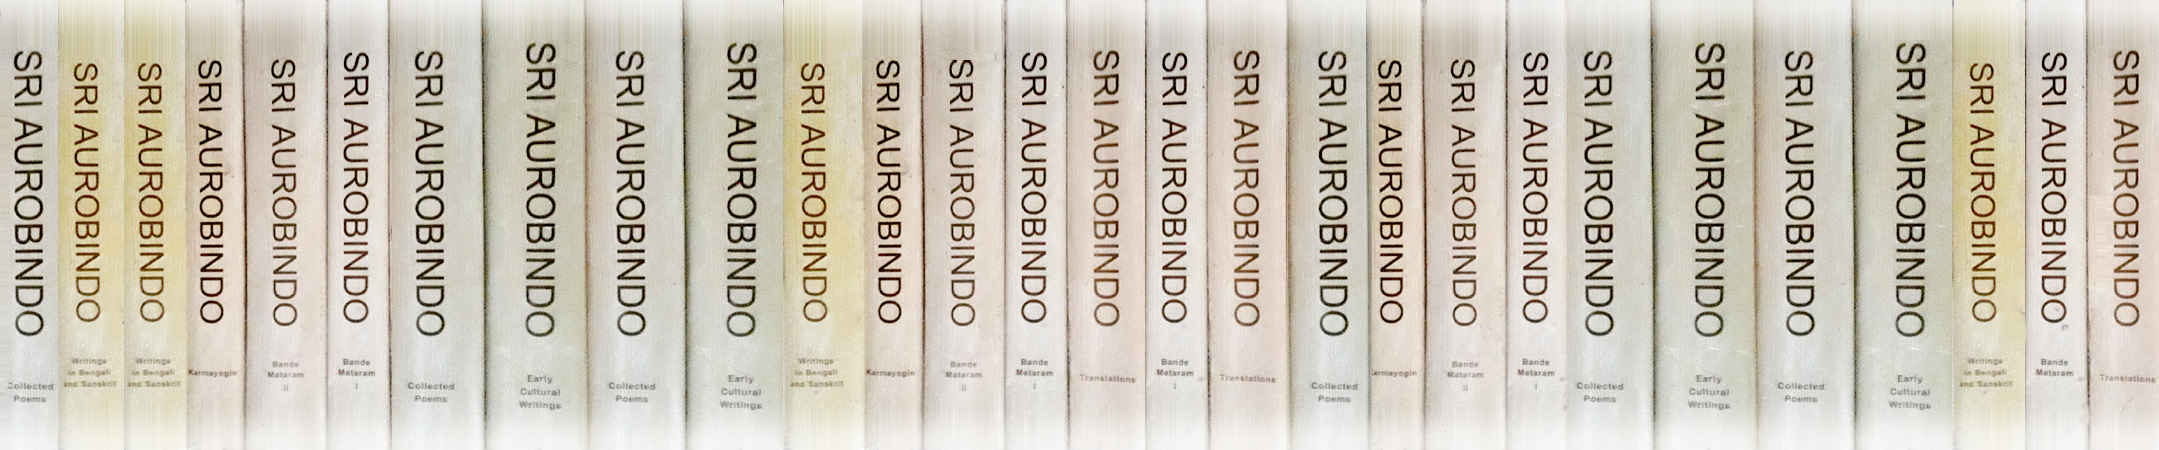 Sri Aurobindos Books